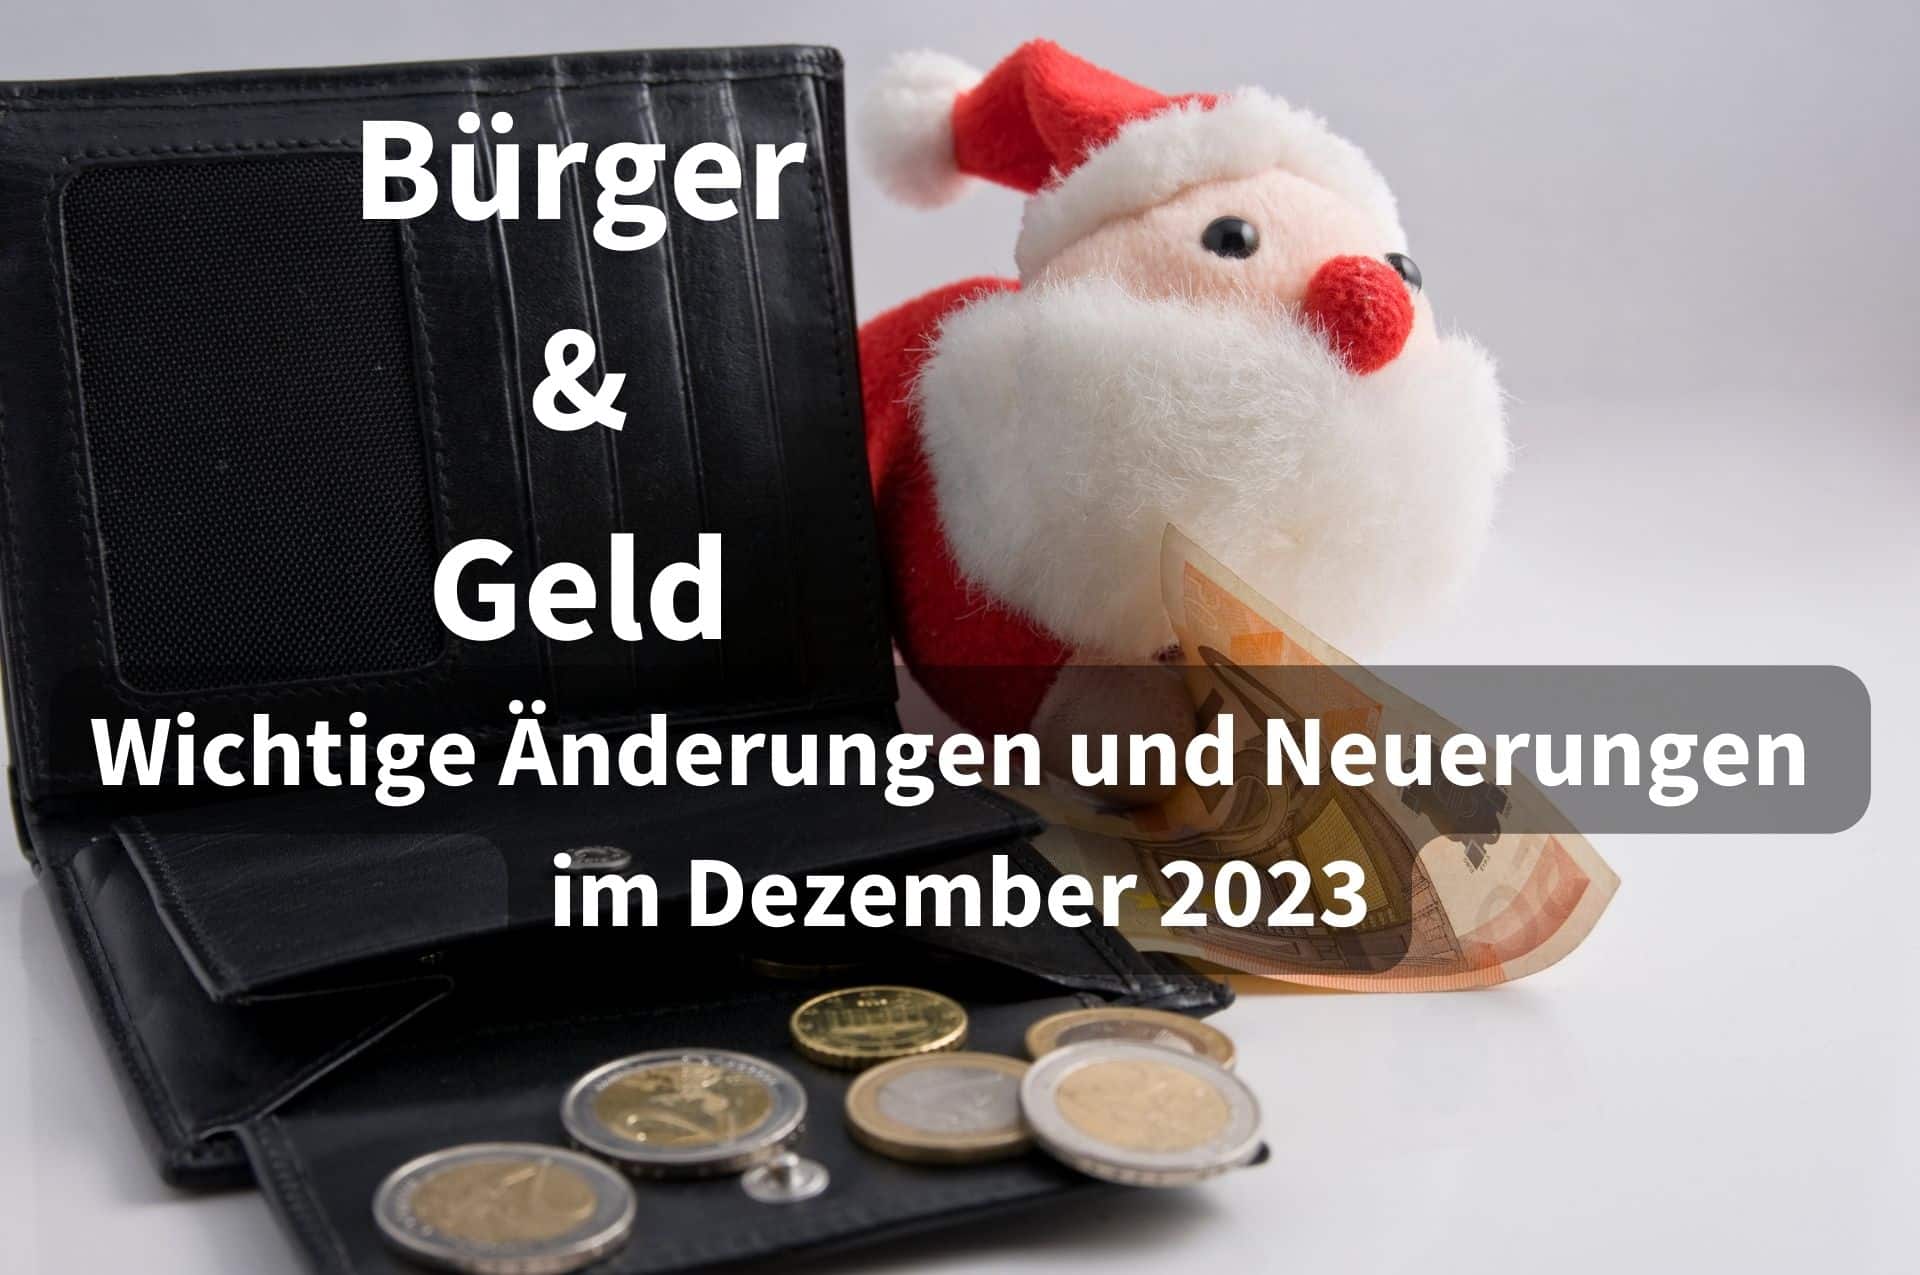 Bürger & Geld: Die wichtigsten Änderungen und Neuerungen im Dezember 2023